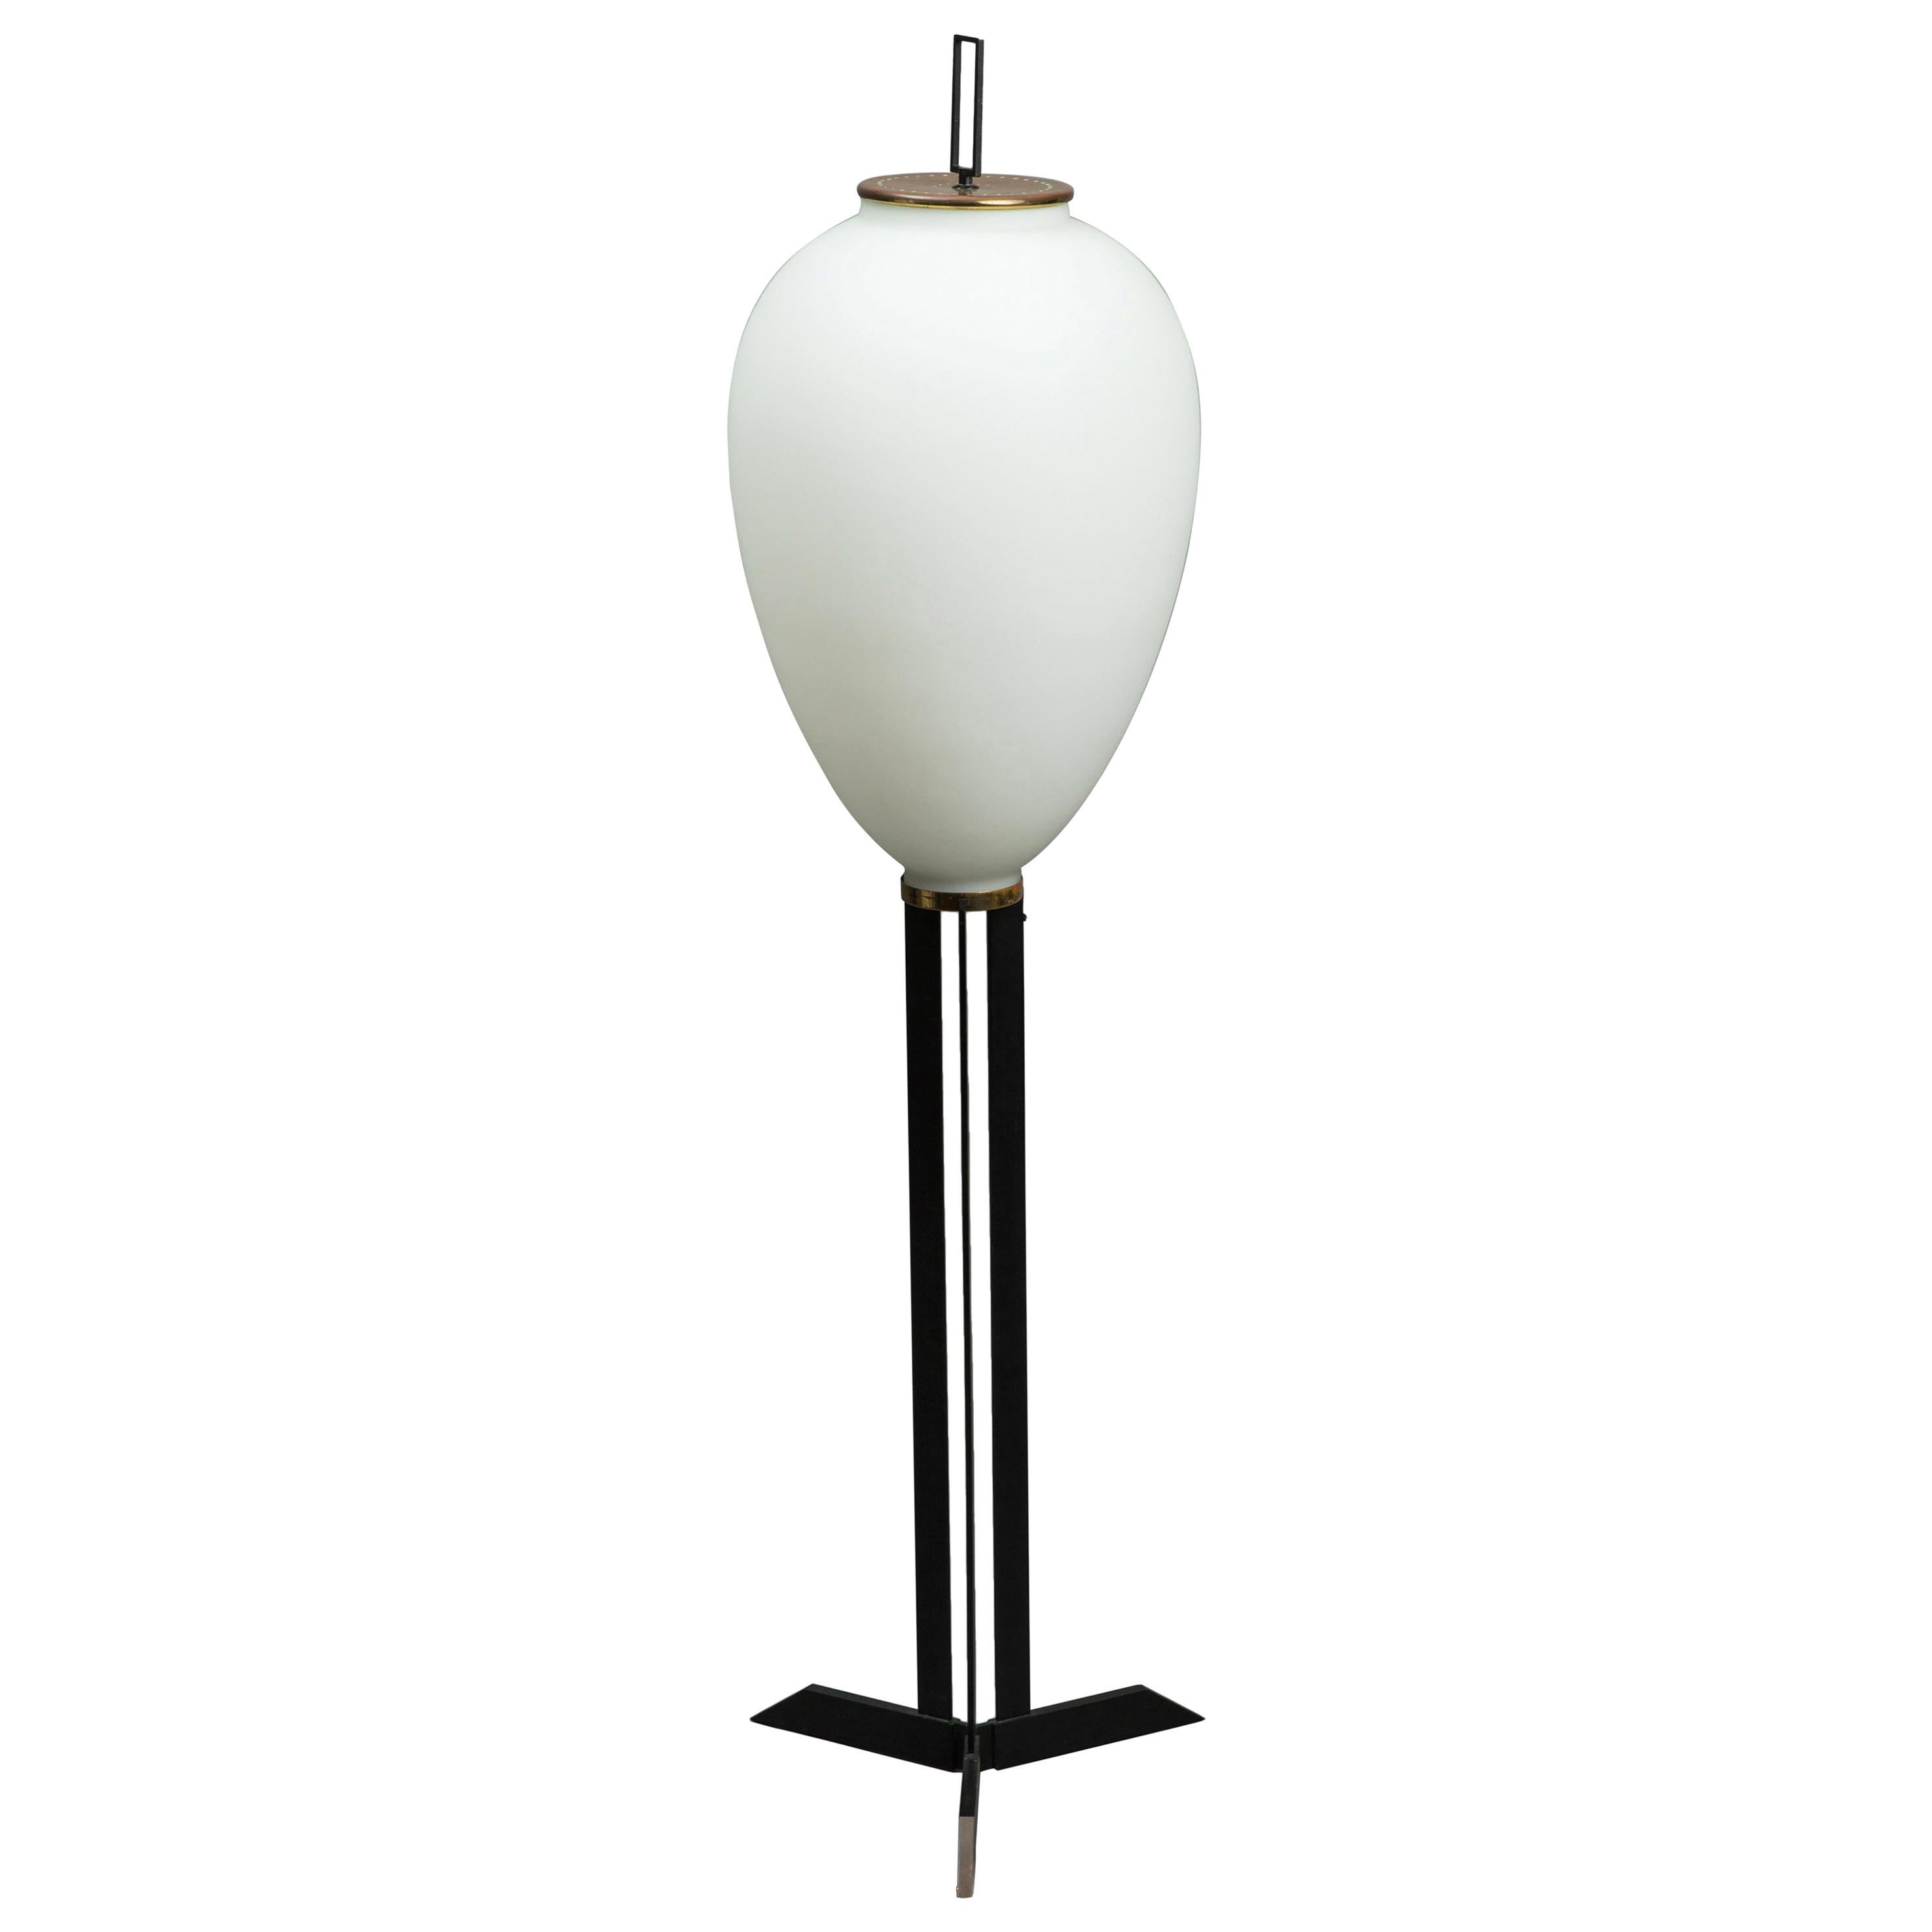 Angelo Lelli for Arredoluce Rare "Pinguino" Floor Lamp For Sale